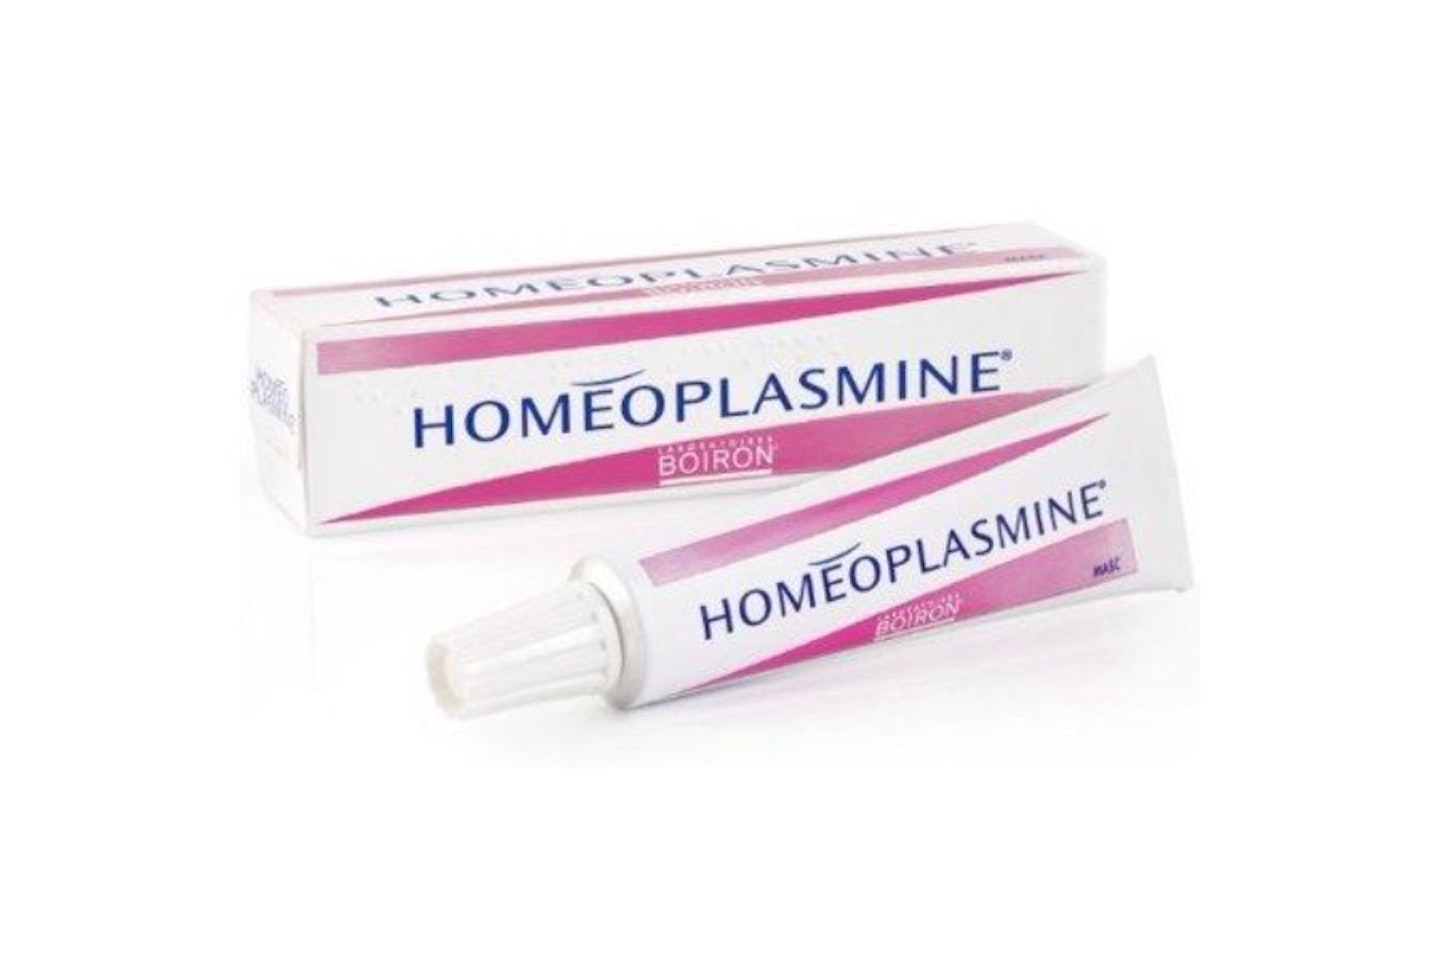 Boiron - Homeoplasmine 18g